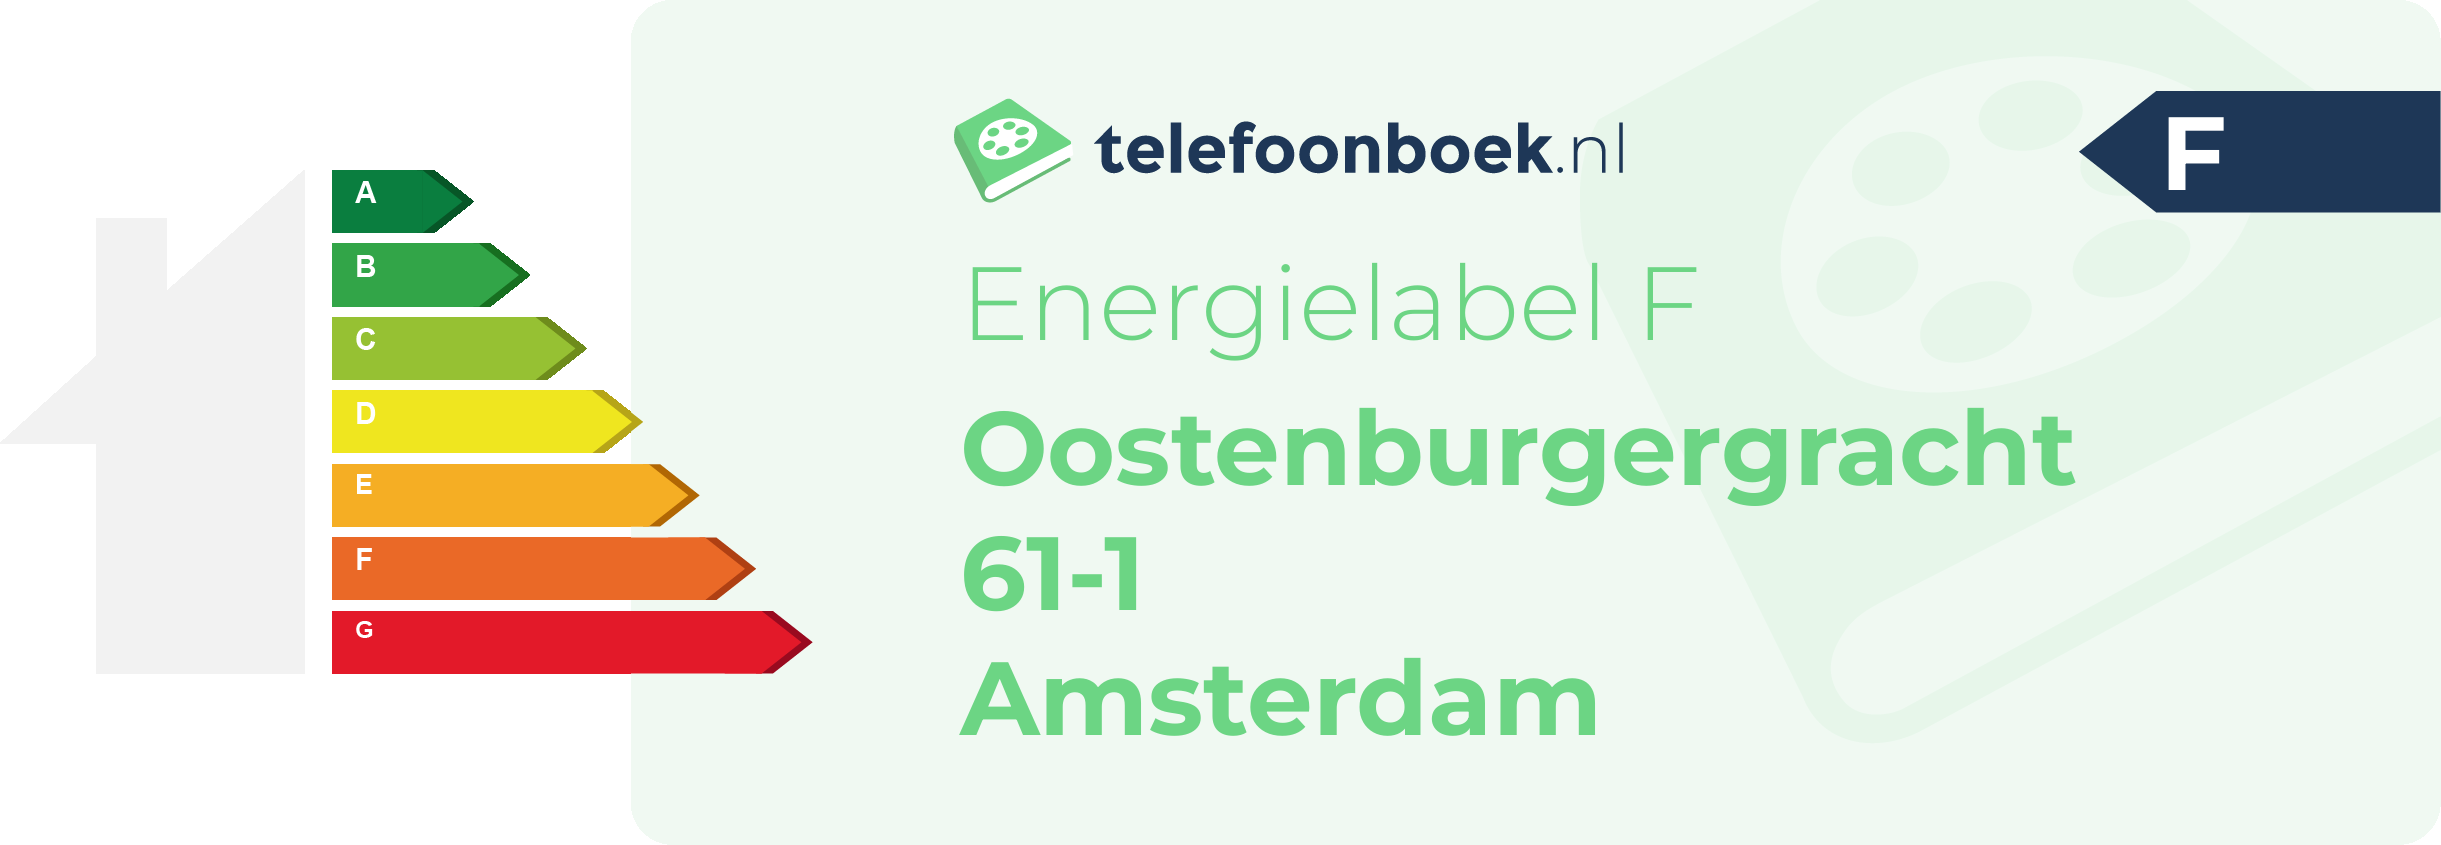 Energielabel Oostenburgergracht 61-1 Amsterdam